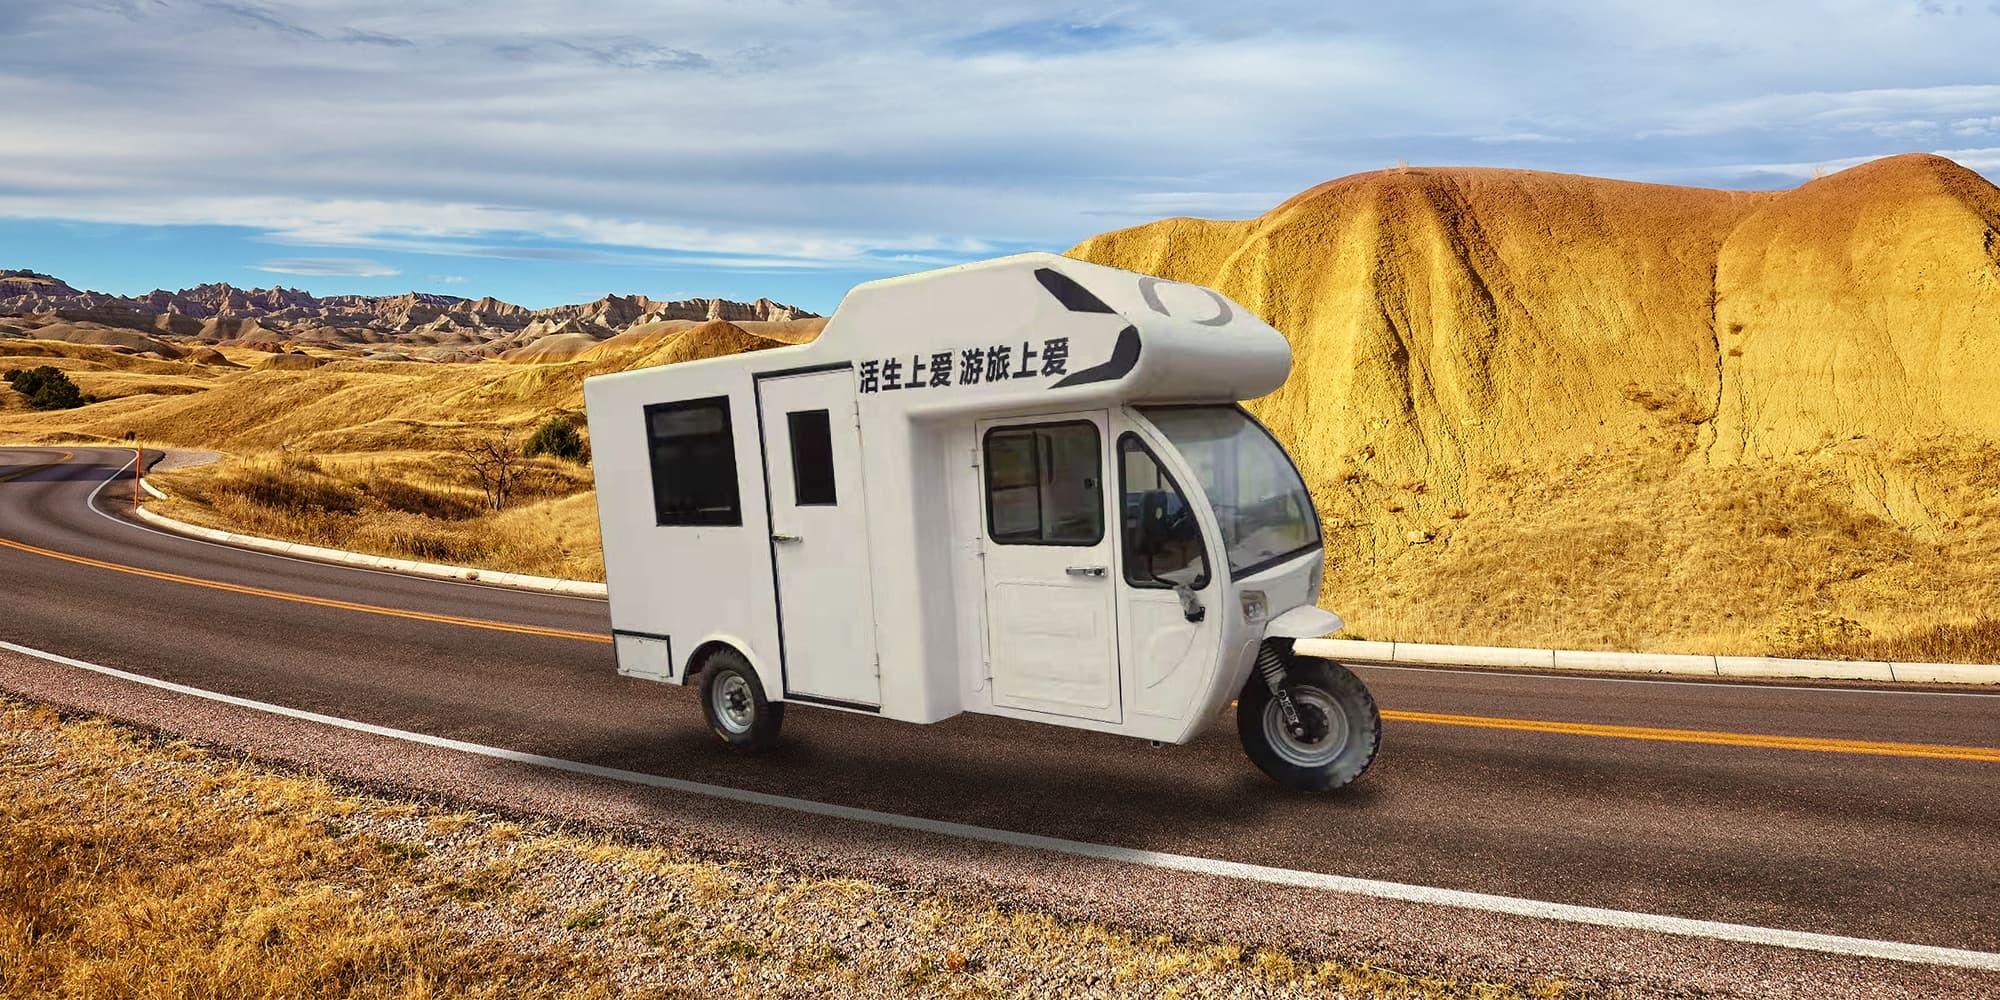 Tuktuk-Camper, Fahrrad-Hausboot, Falt-Caravan: Diese Camping-Ideen sind  echt kurios